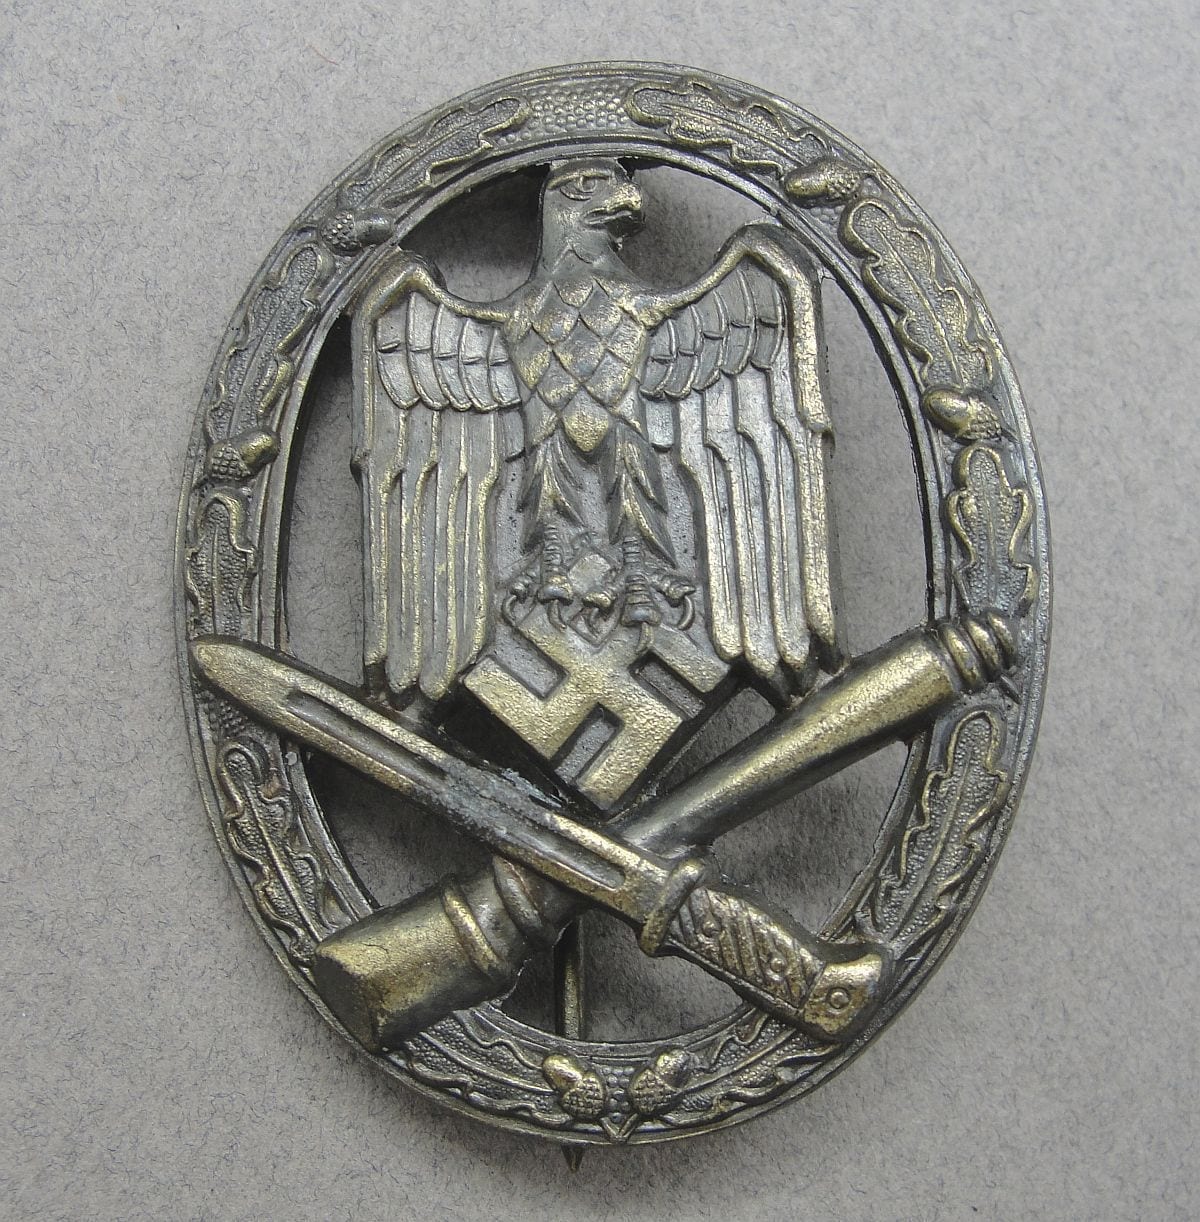 Army/Waffen-SS General Assault Badge by Assmann "A 2"